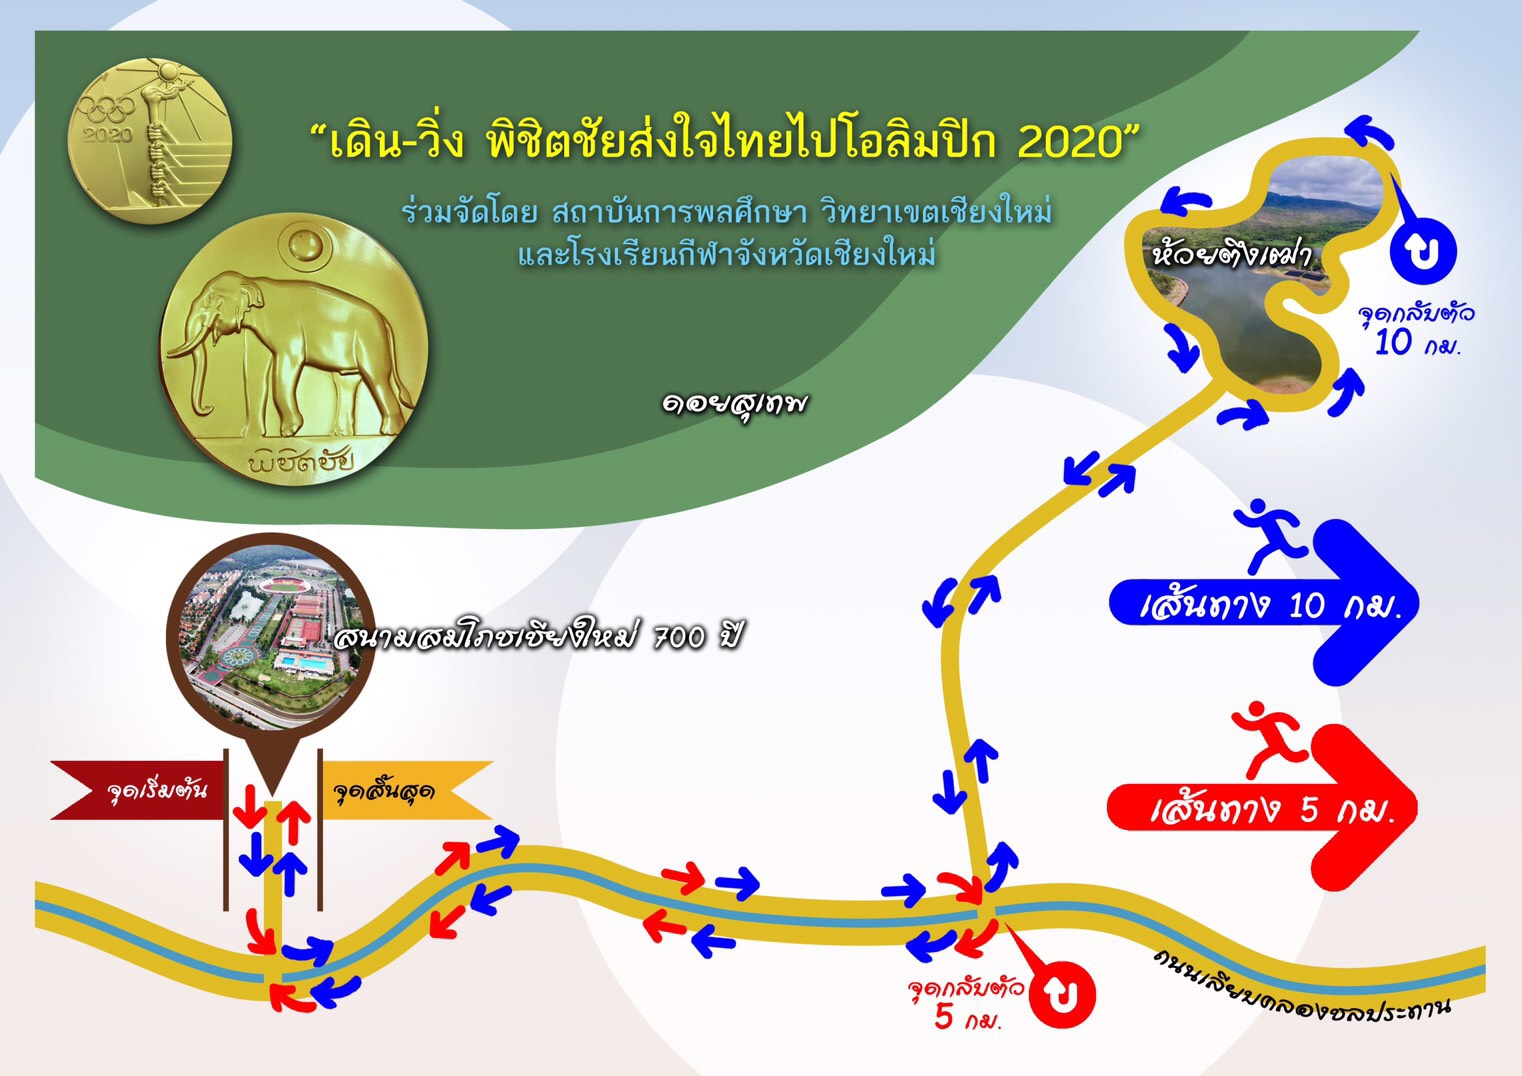 เดิน-วิ่ง พิชิตชัยส่งใจไทยไปโอลิมปิก 2020 Weaving Thai Hearts to 2020 Olympics Victory วันอาทิตย์ที่ 11 สิงหาคม 2562 ณ สนามสมโภชเชียงใหม่ 700 ปี